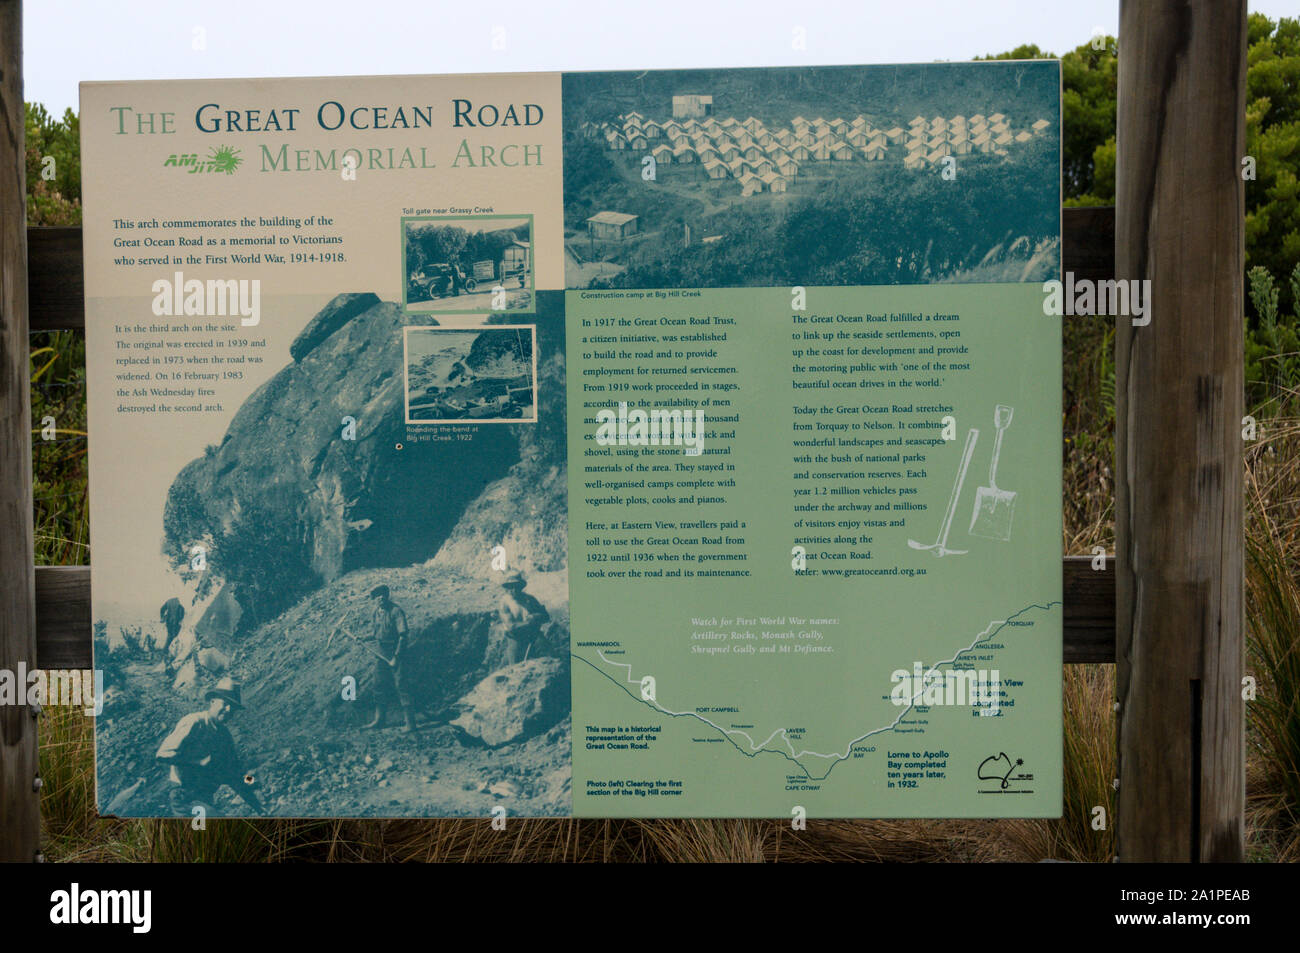 Ein Touristeninformationsbüro, erzählt die Geschichte der Great Ocean Road Bau in der Nähe des Memorial Arch ÔEastern ViewÕ auf der Great Ocean Roa Stockfoto